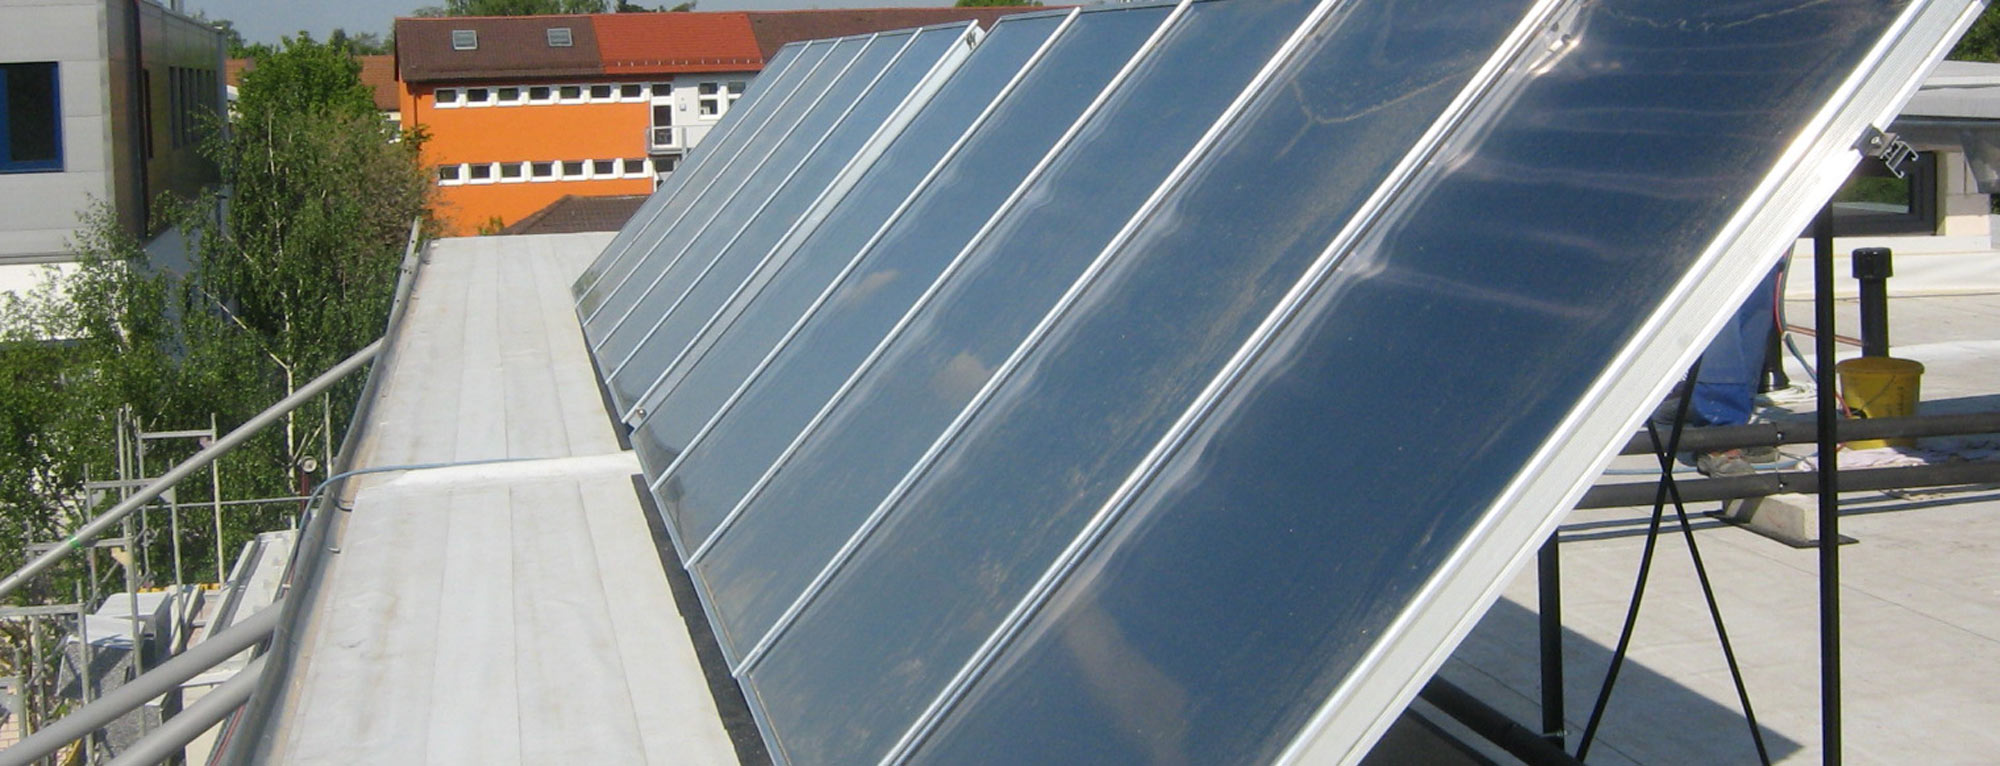 Meier Haustechnik Solar